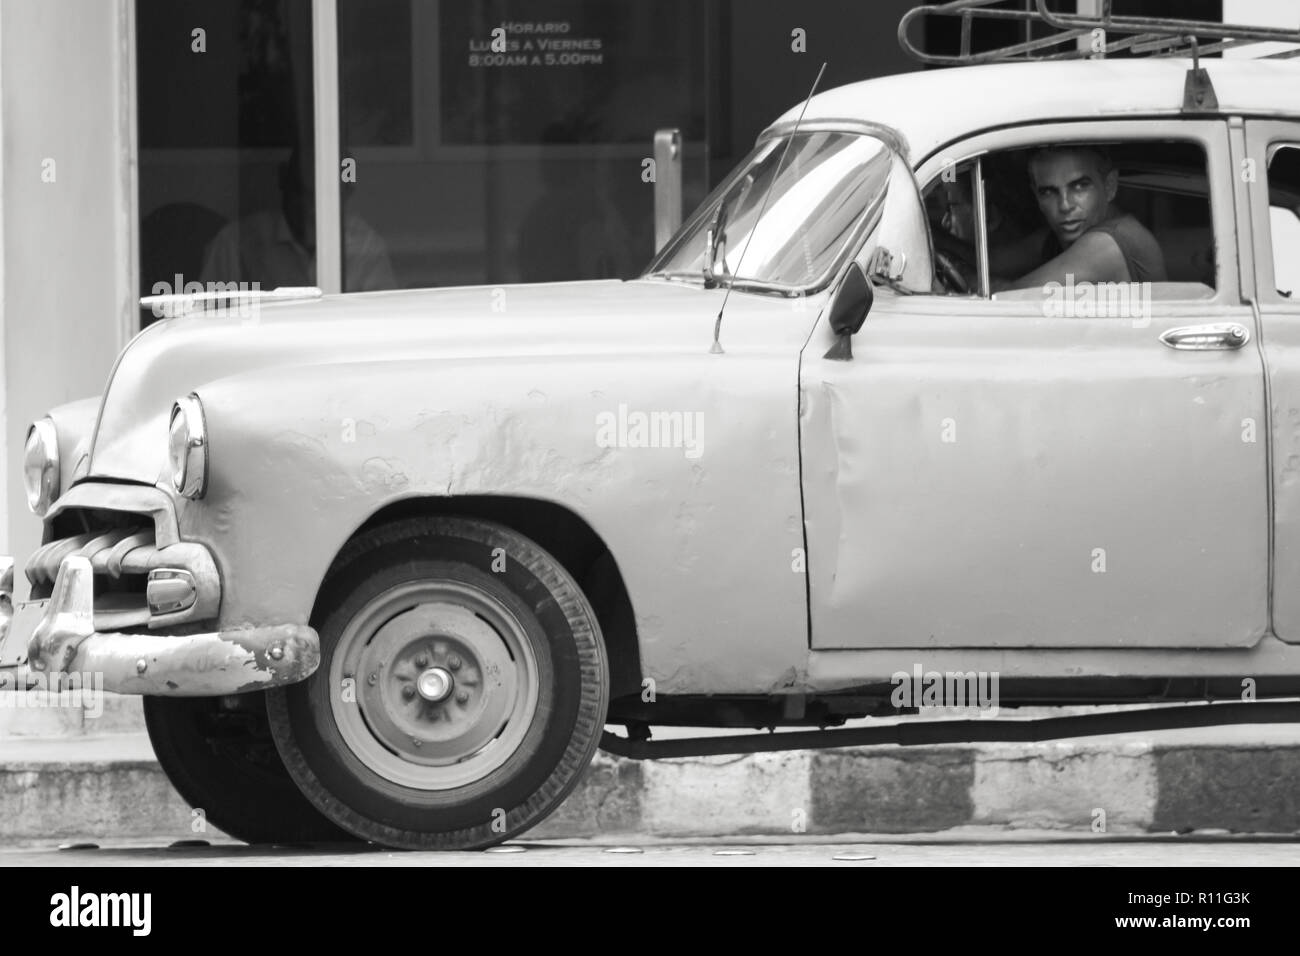 07/07/2015, Cienfuegos, Cuba est passé d'un homme entraîne son restauré voiture classique, mais son évident que le temps a fait des ravages. L'homme me semblent des années 60. Banque D'Images